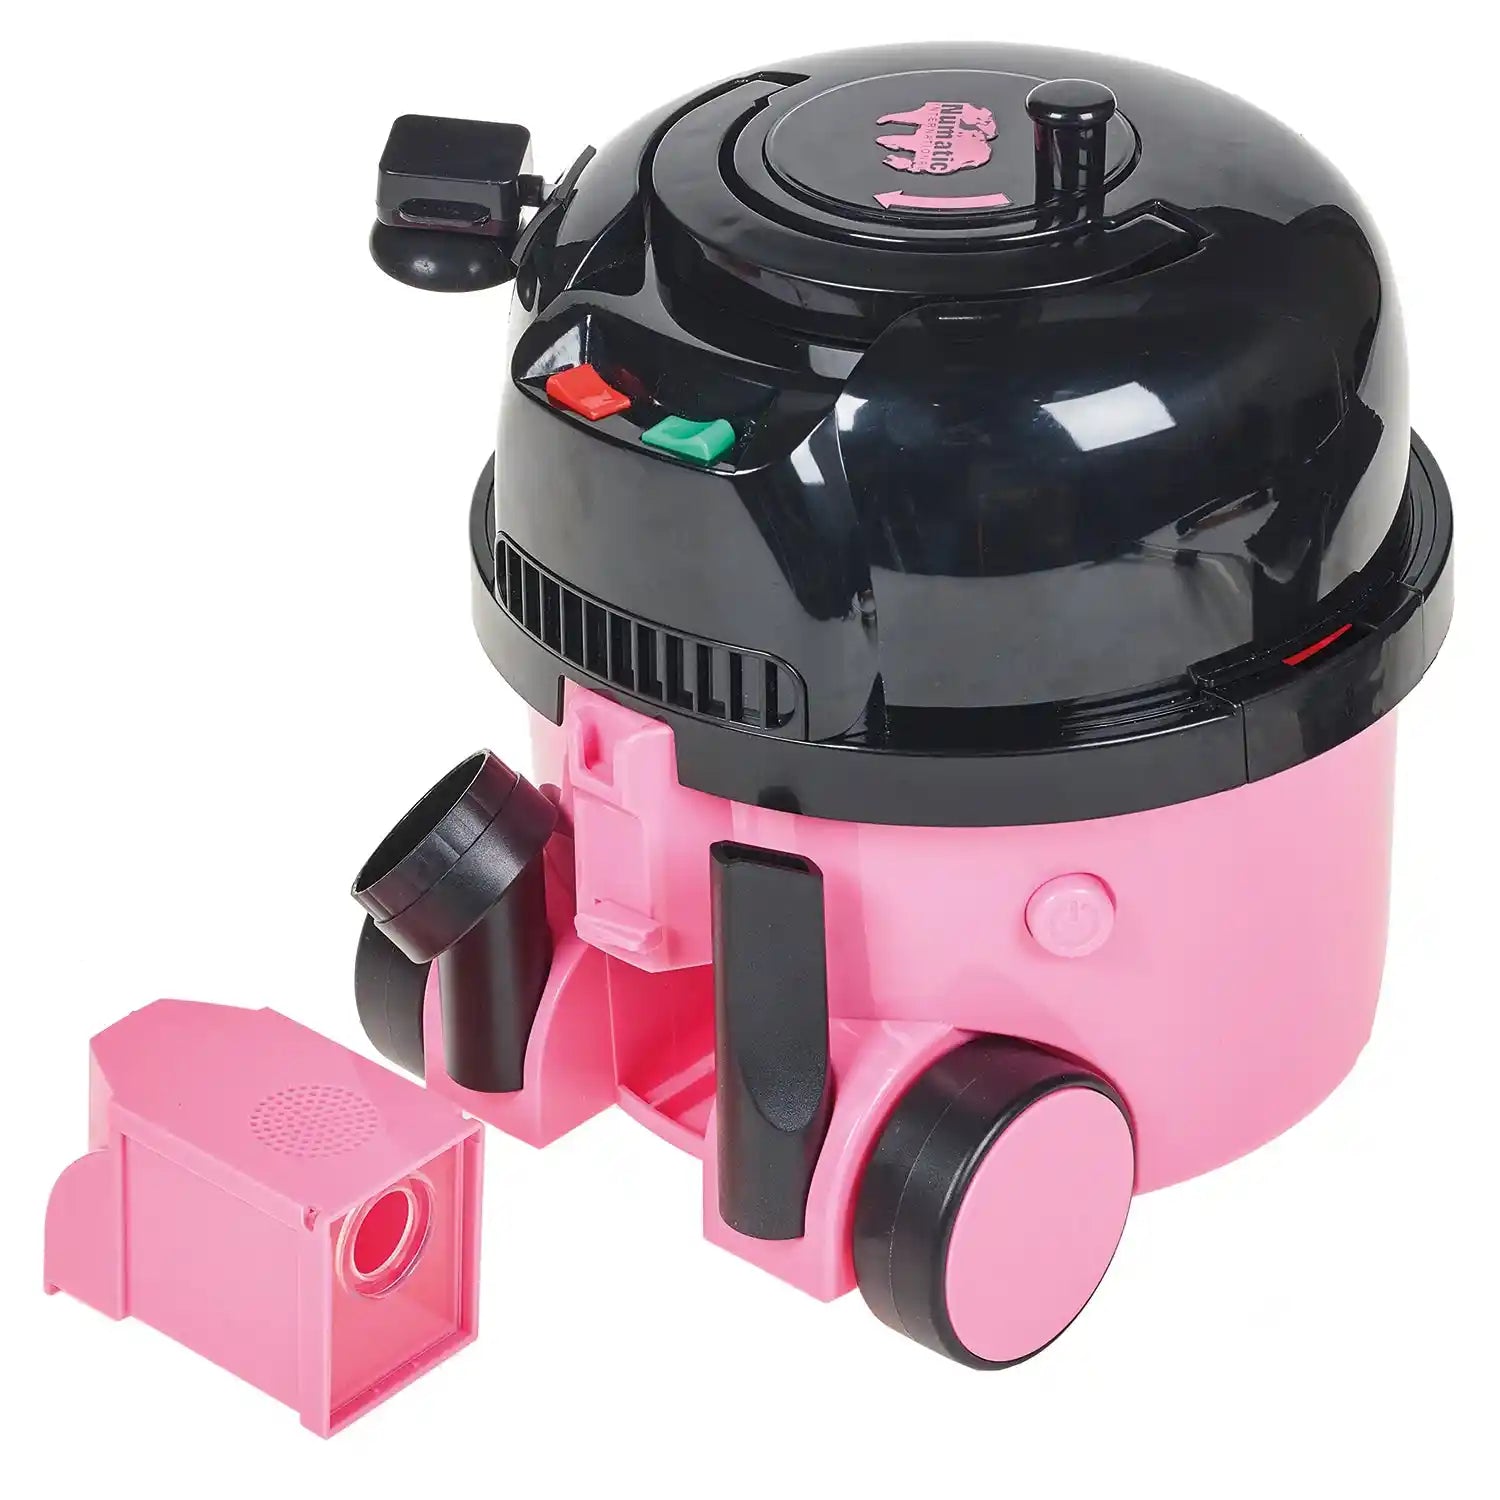 Casdon - Hetty Vacuum Cleaner Toy